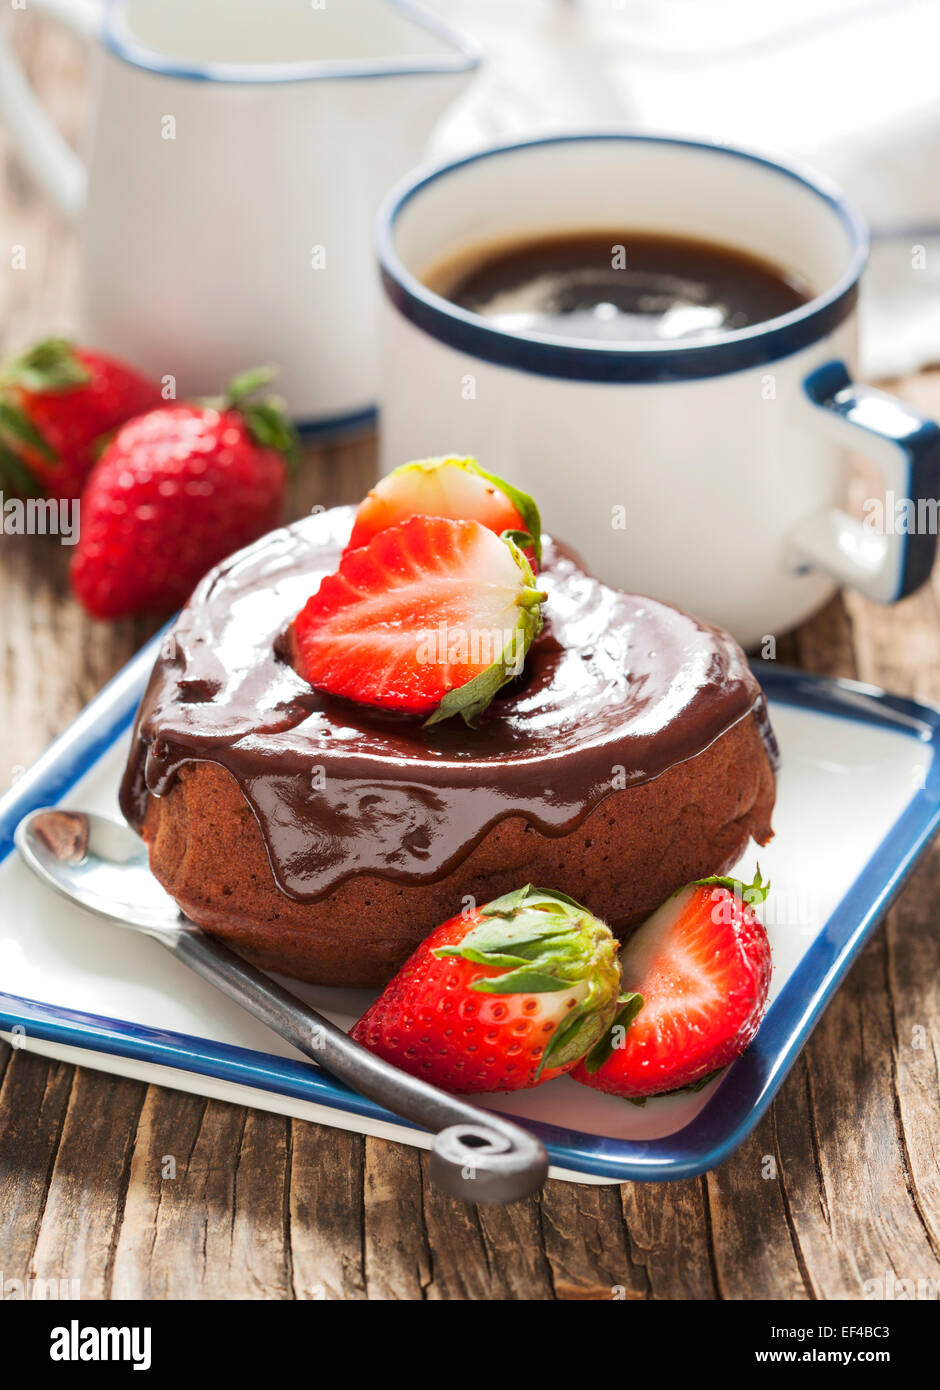 Gâteau au chocolat en forme de coeur avec strawberry Banque D'Images